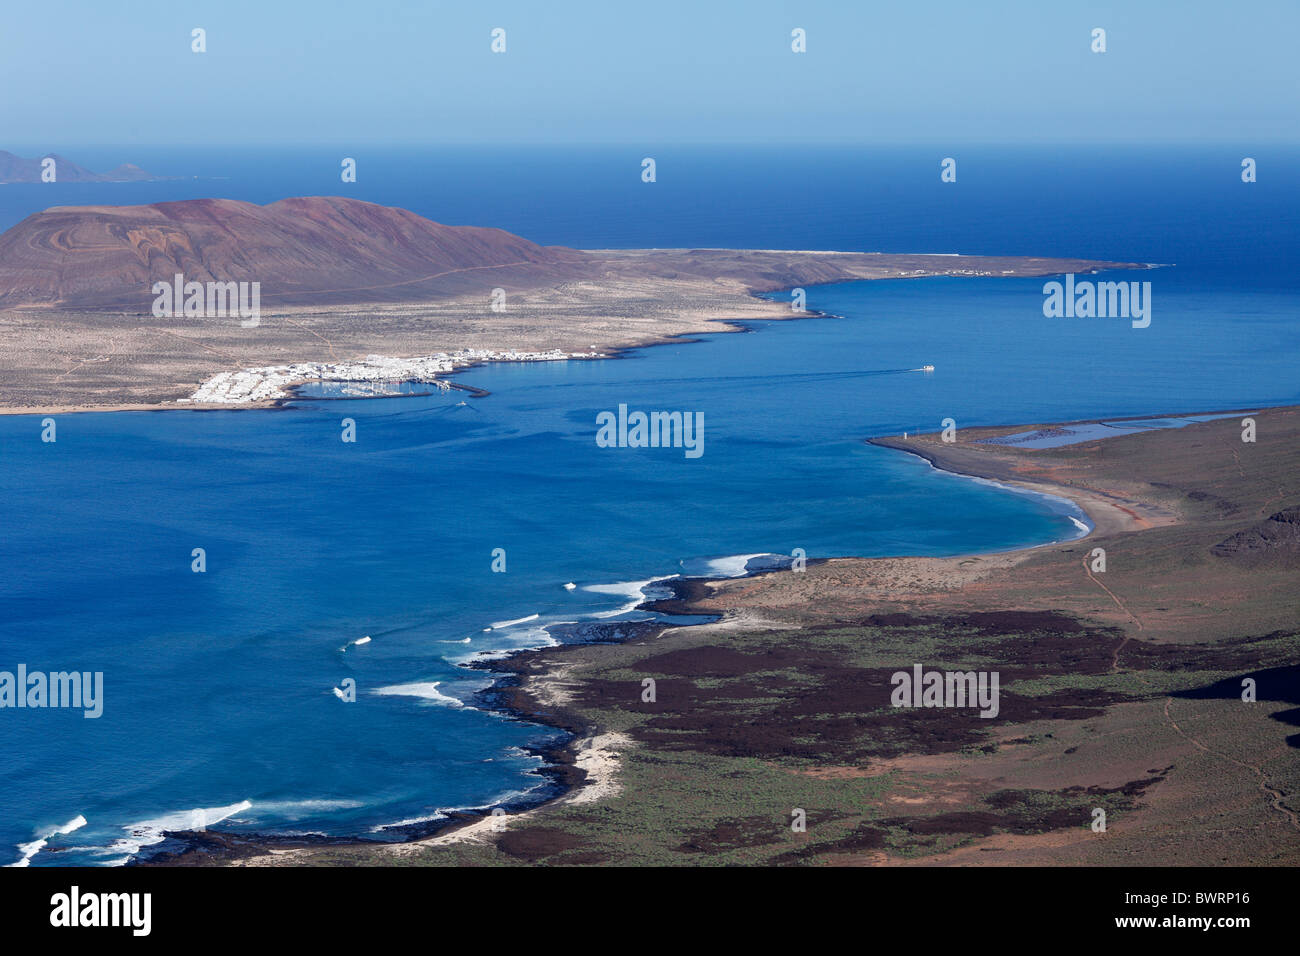 El Rio Strait, Gauche, La Graciosa Island avec la ville de Caleta del Sebo, Lanzarote, Canary Islands, Spain, Europe Banque D'Images